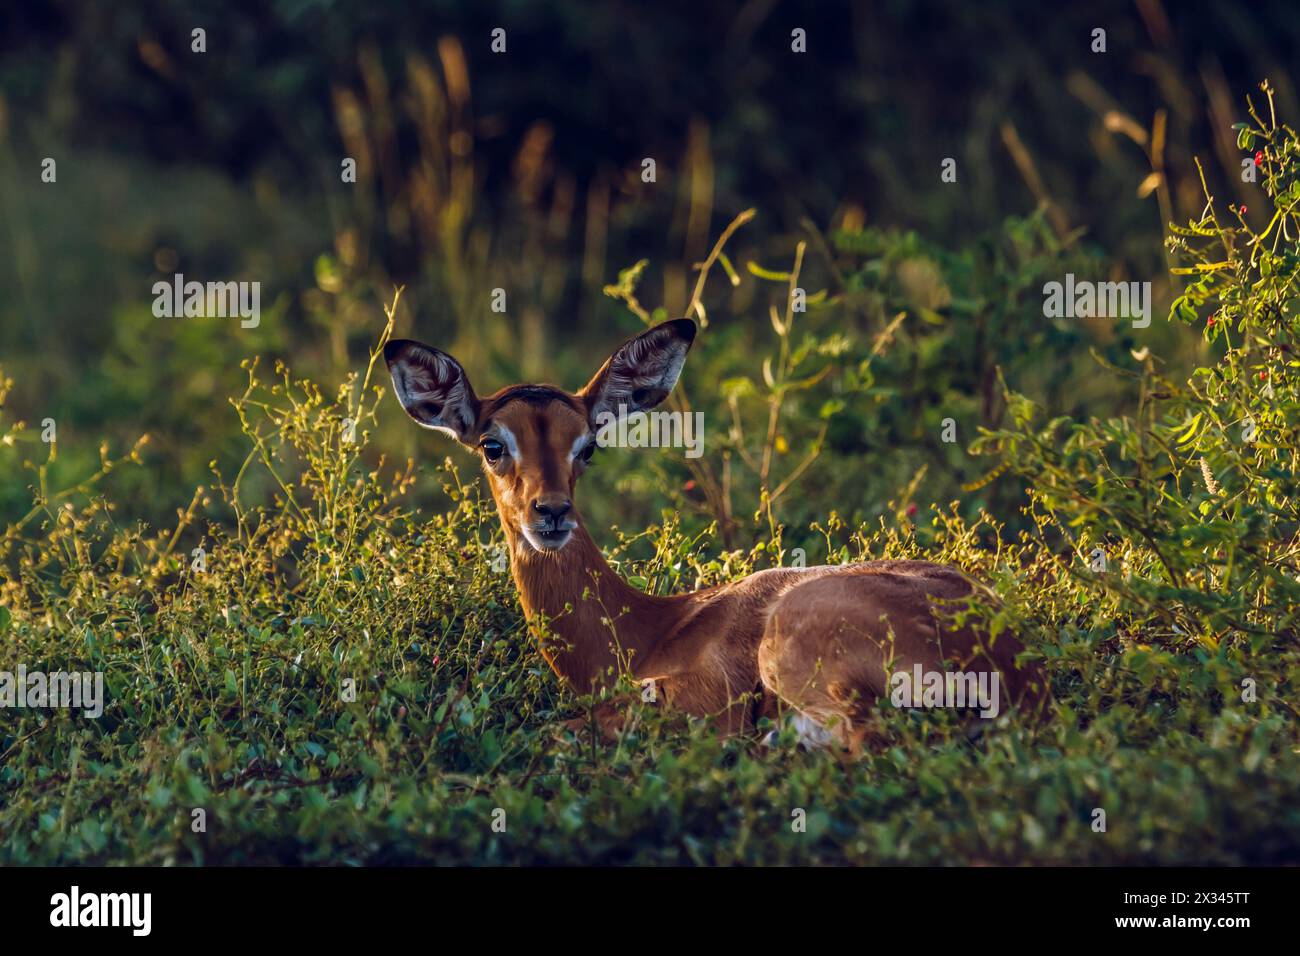 Mignon jeune Impala commun couché dans l'herbe dans le parc national Kruger, Afrique du Sud ; espèce Aepyceros melampus famille des Bovidae Banque D'Images